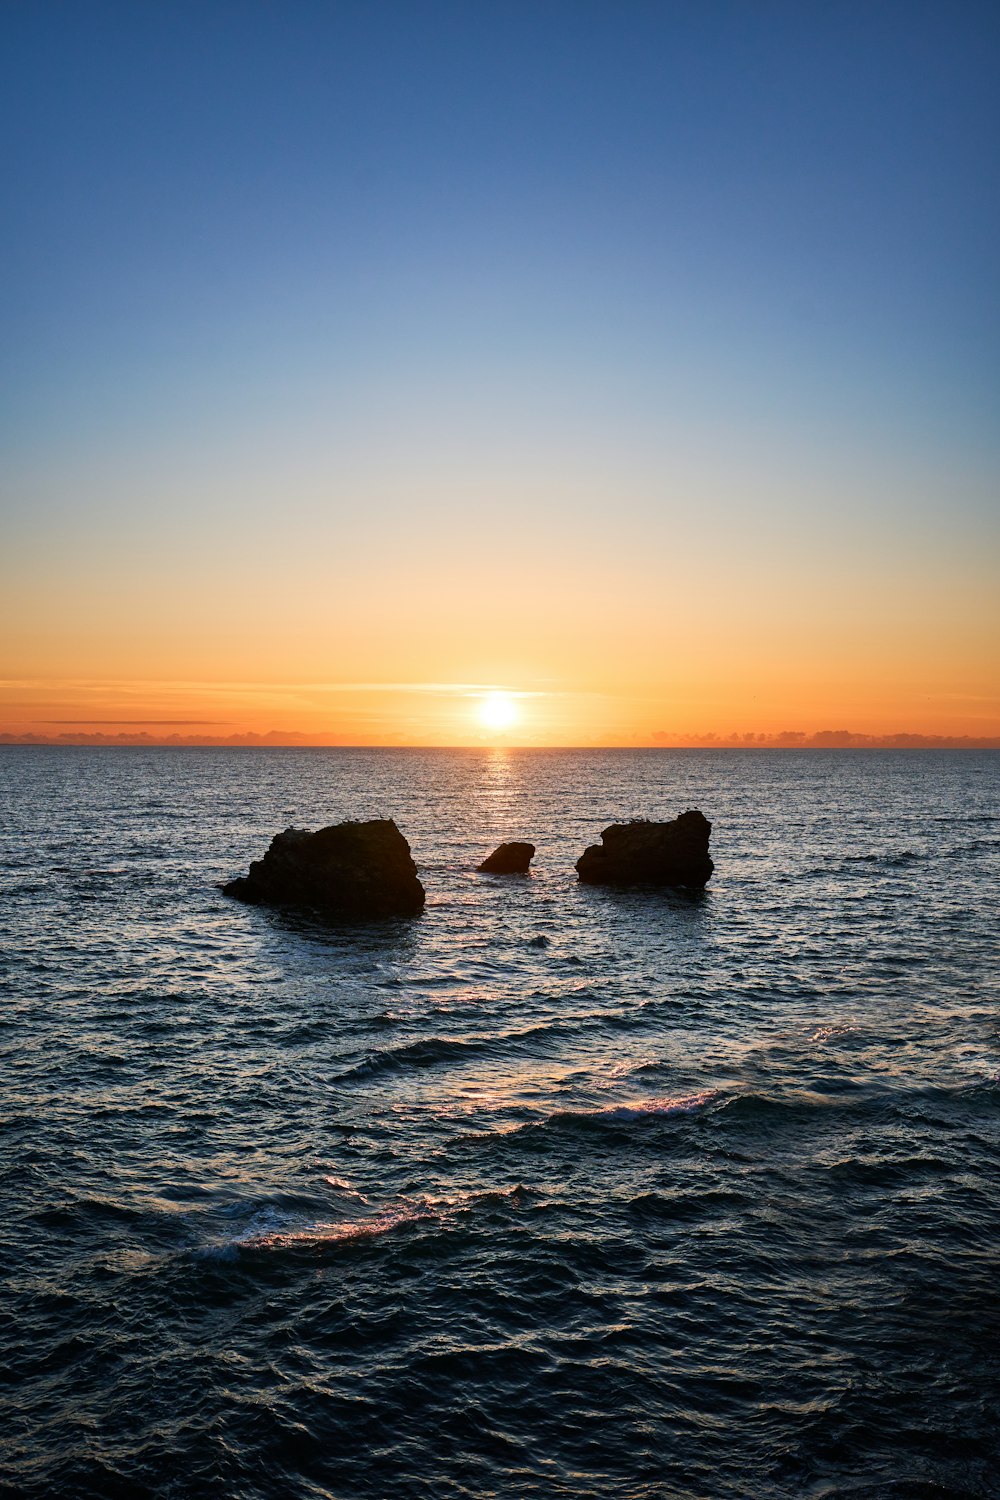 Il sole sta tramontando sull'oceano con le rocce nell'acqua